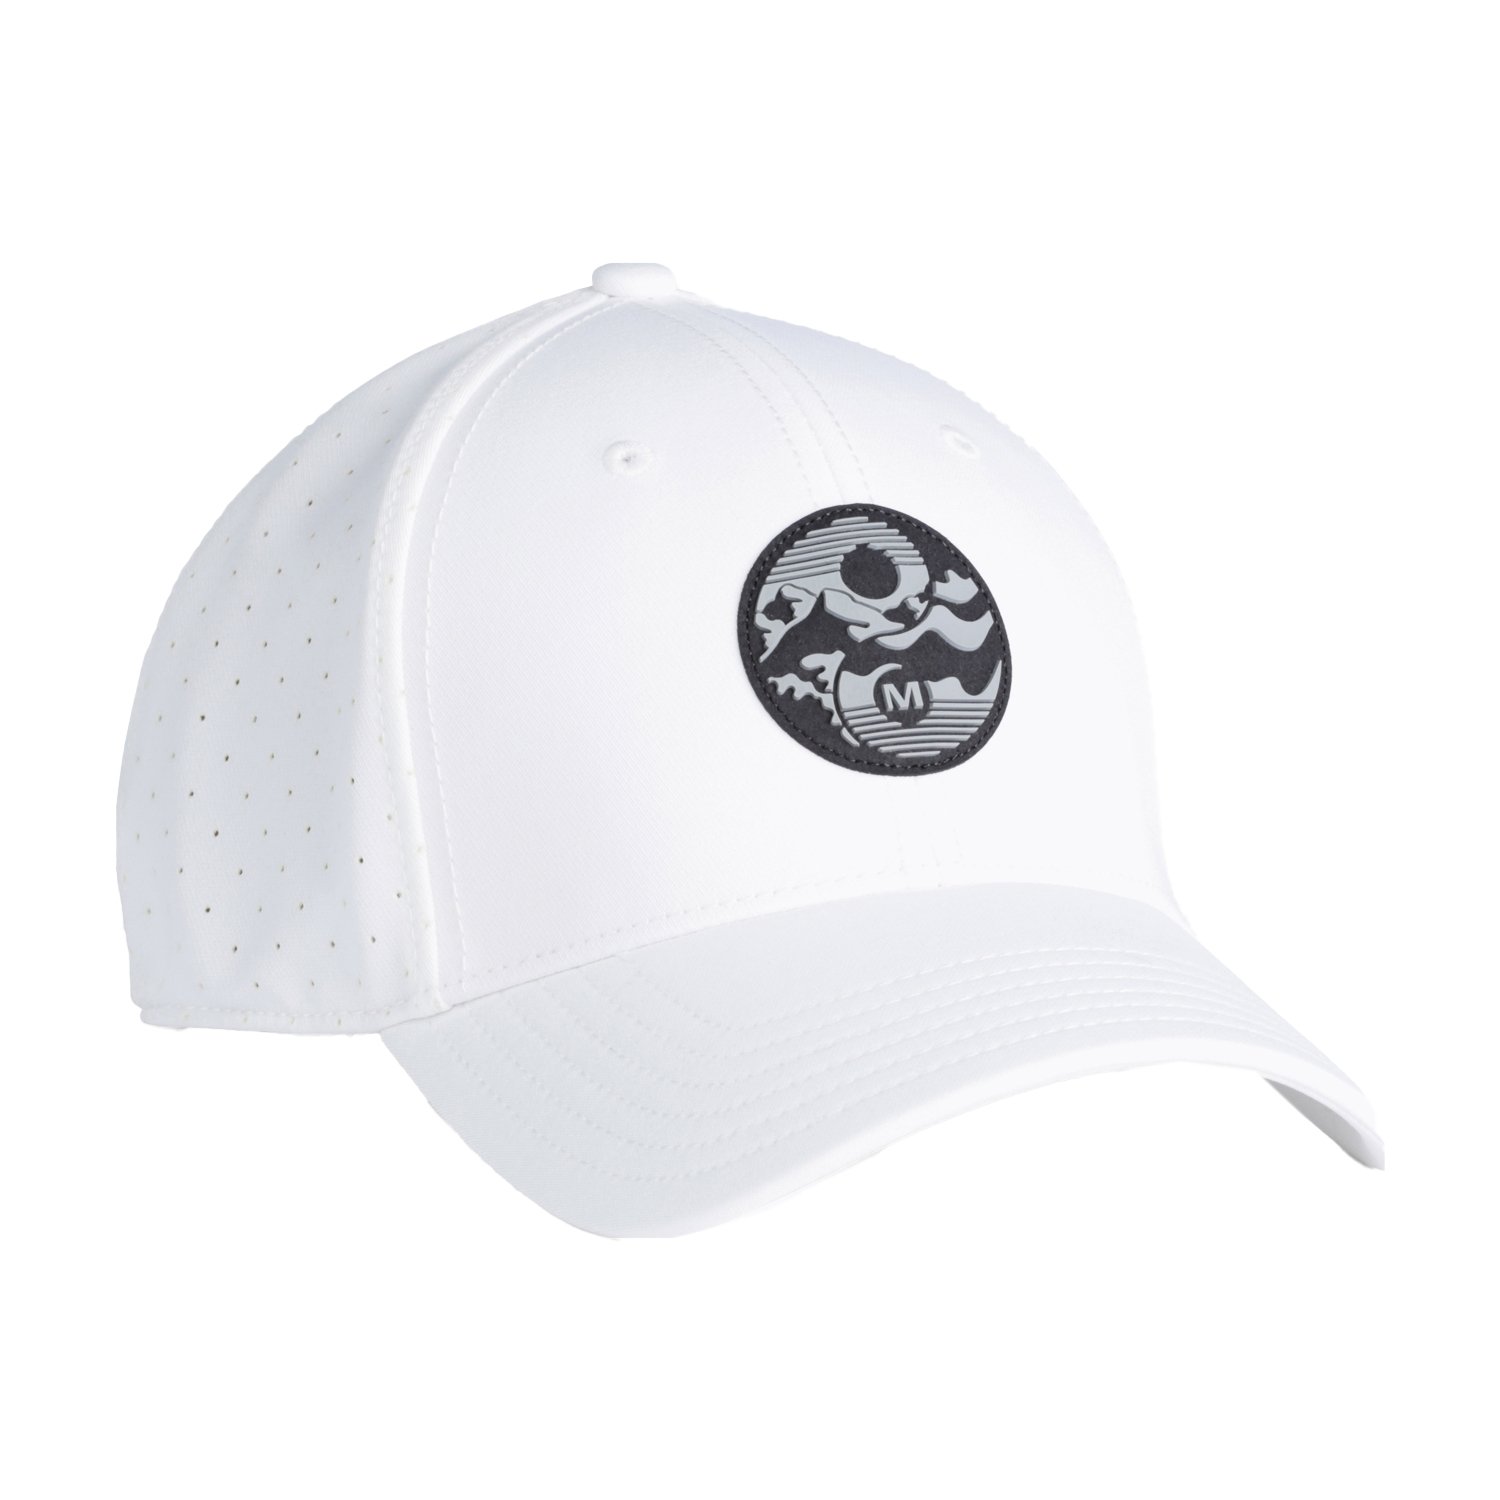 Merrell Balance Ranger Şapka - Beyaz - 1